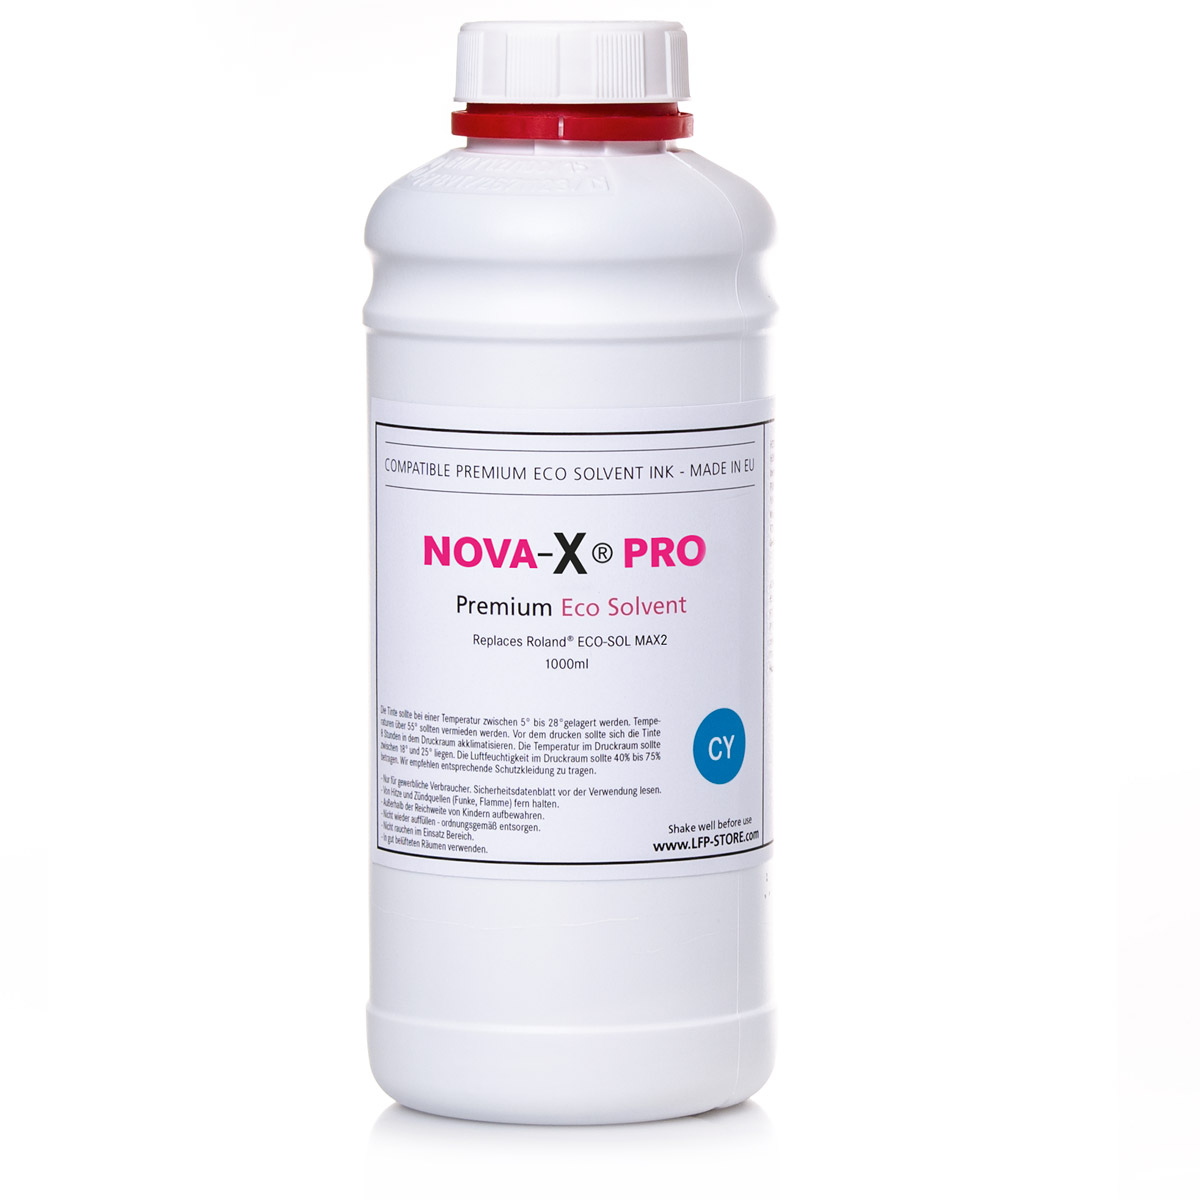 1L NOVA-X® PRO3 | Roland® Eco-Sol Max 3 compatible